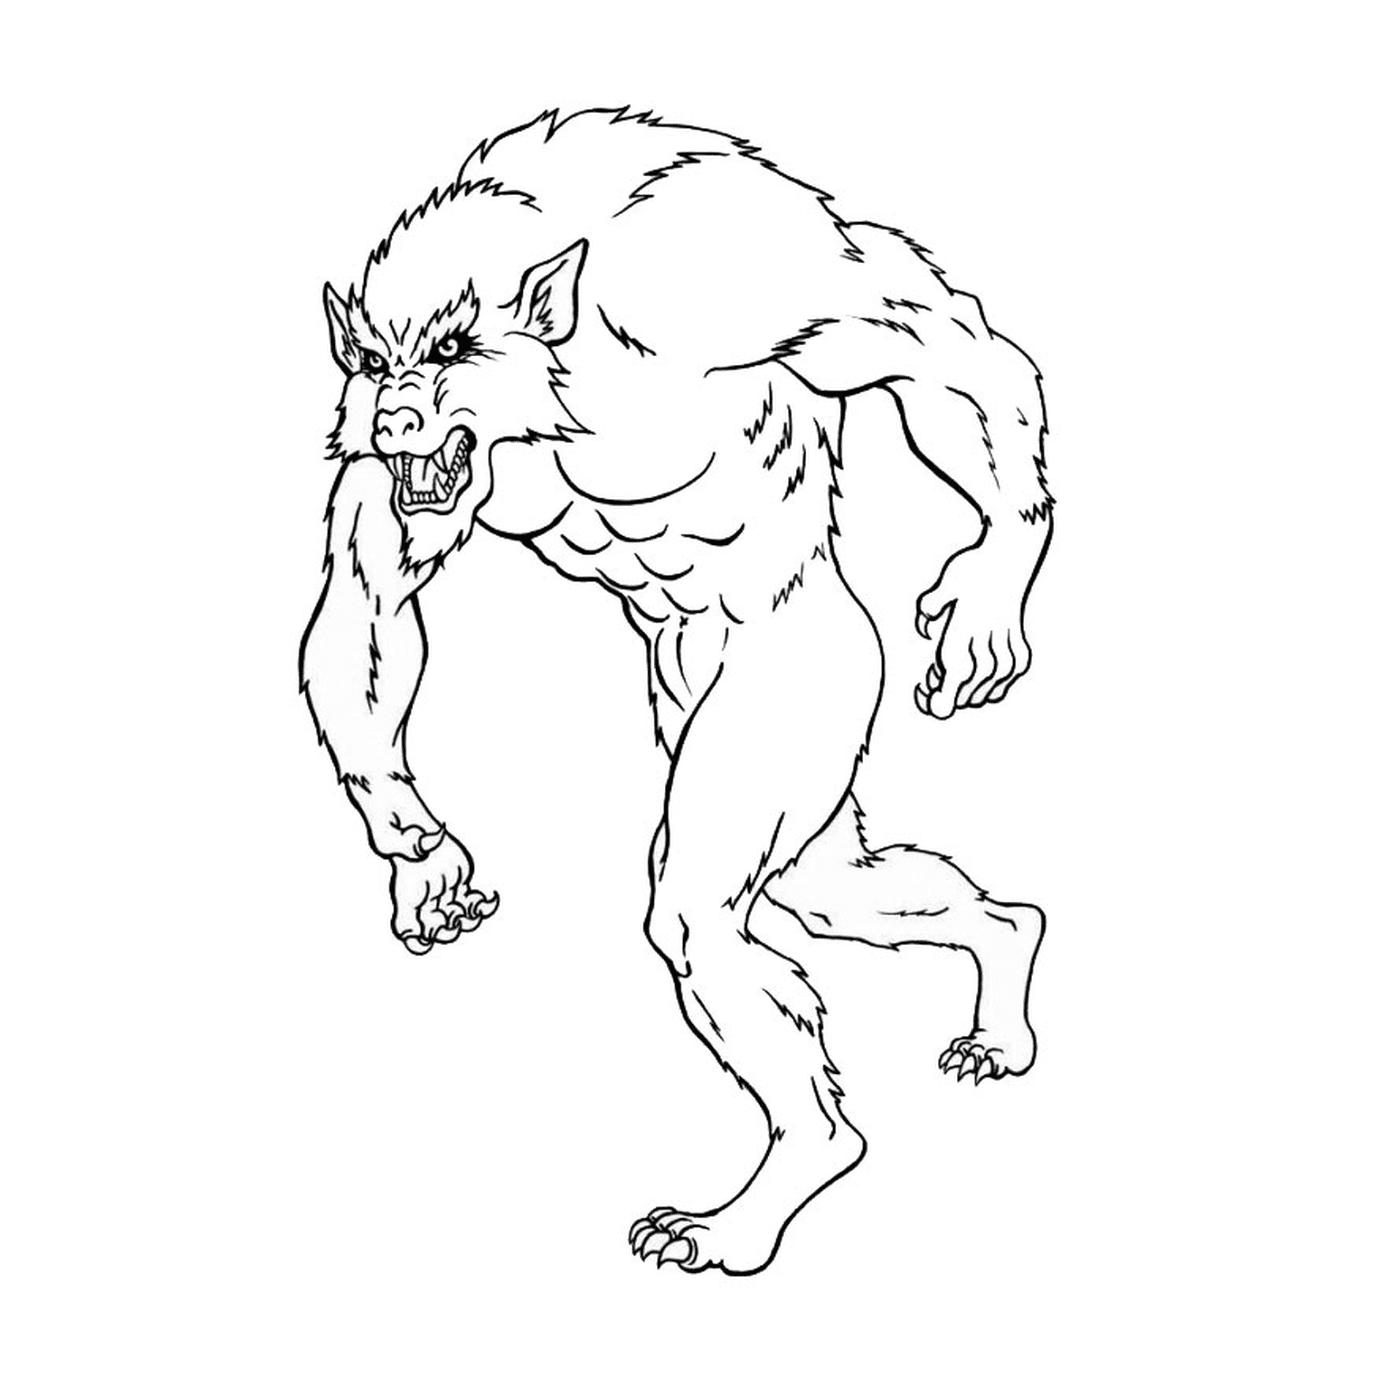  A werewolf 